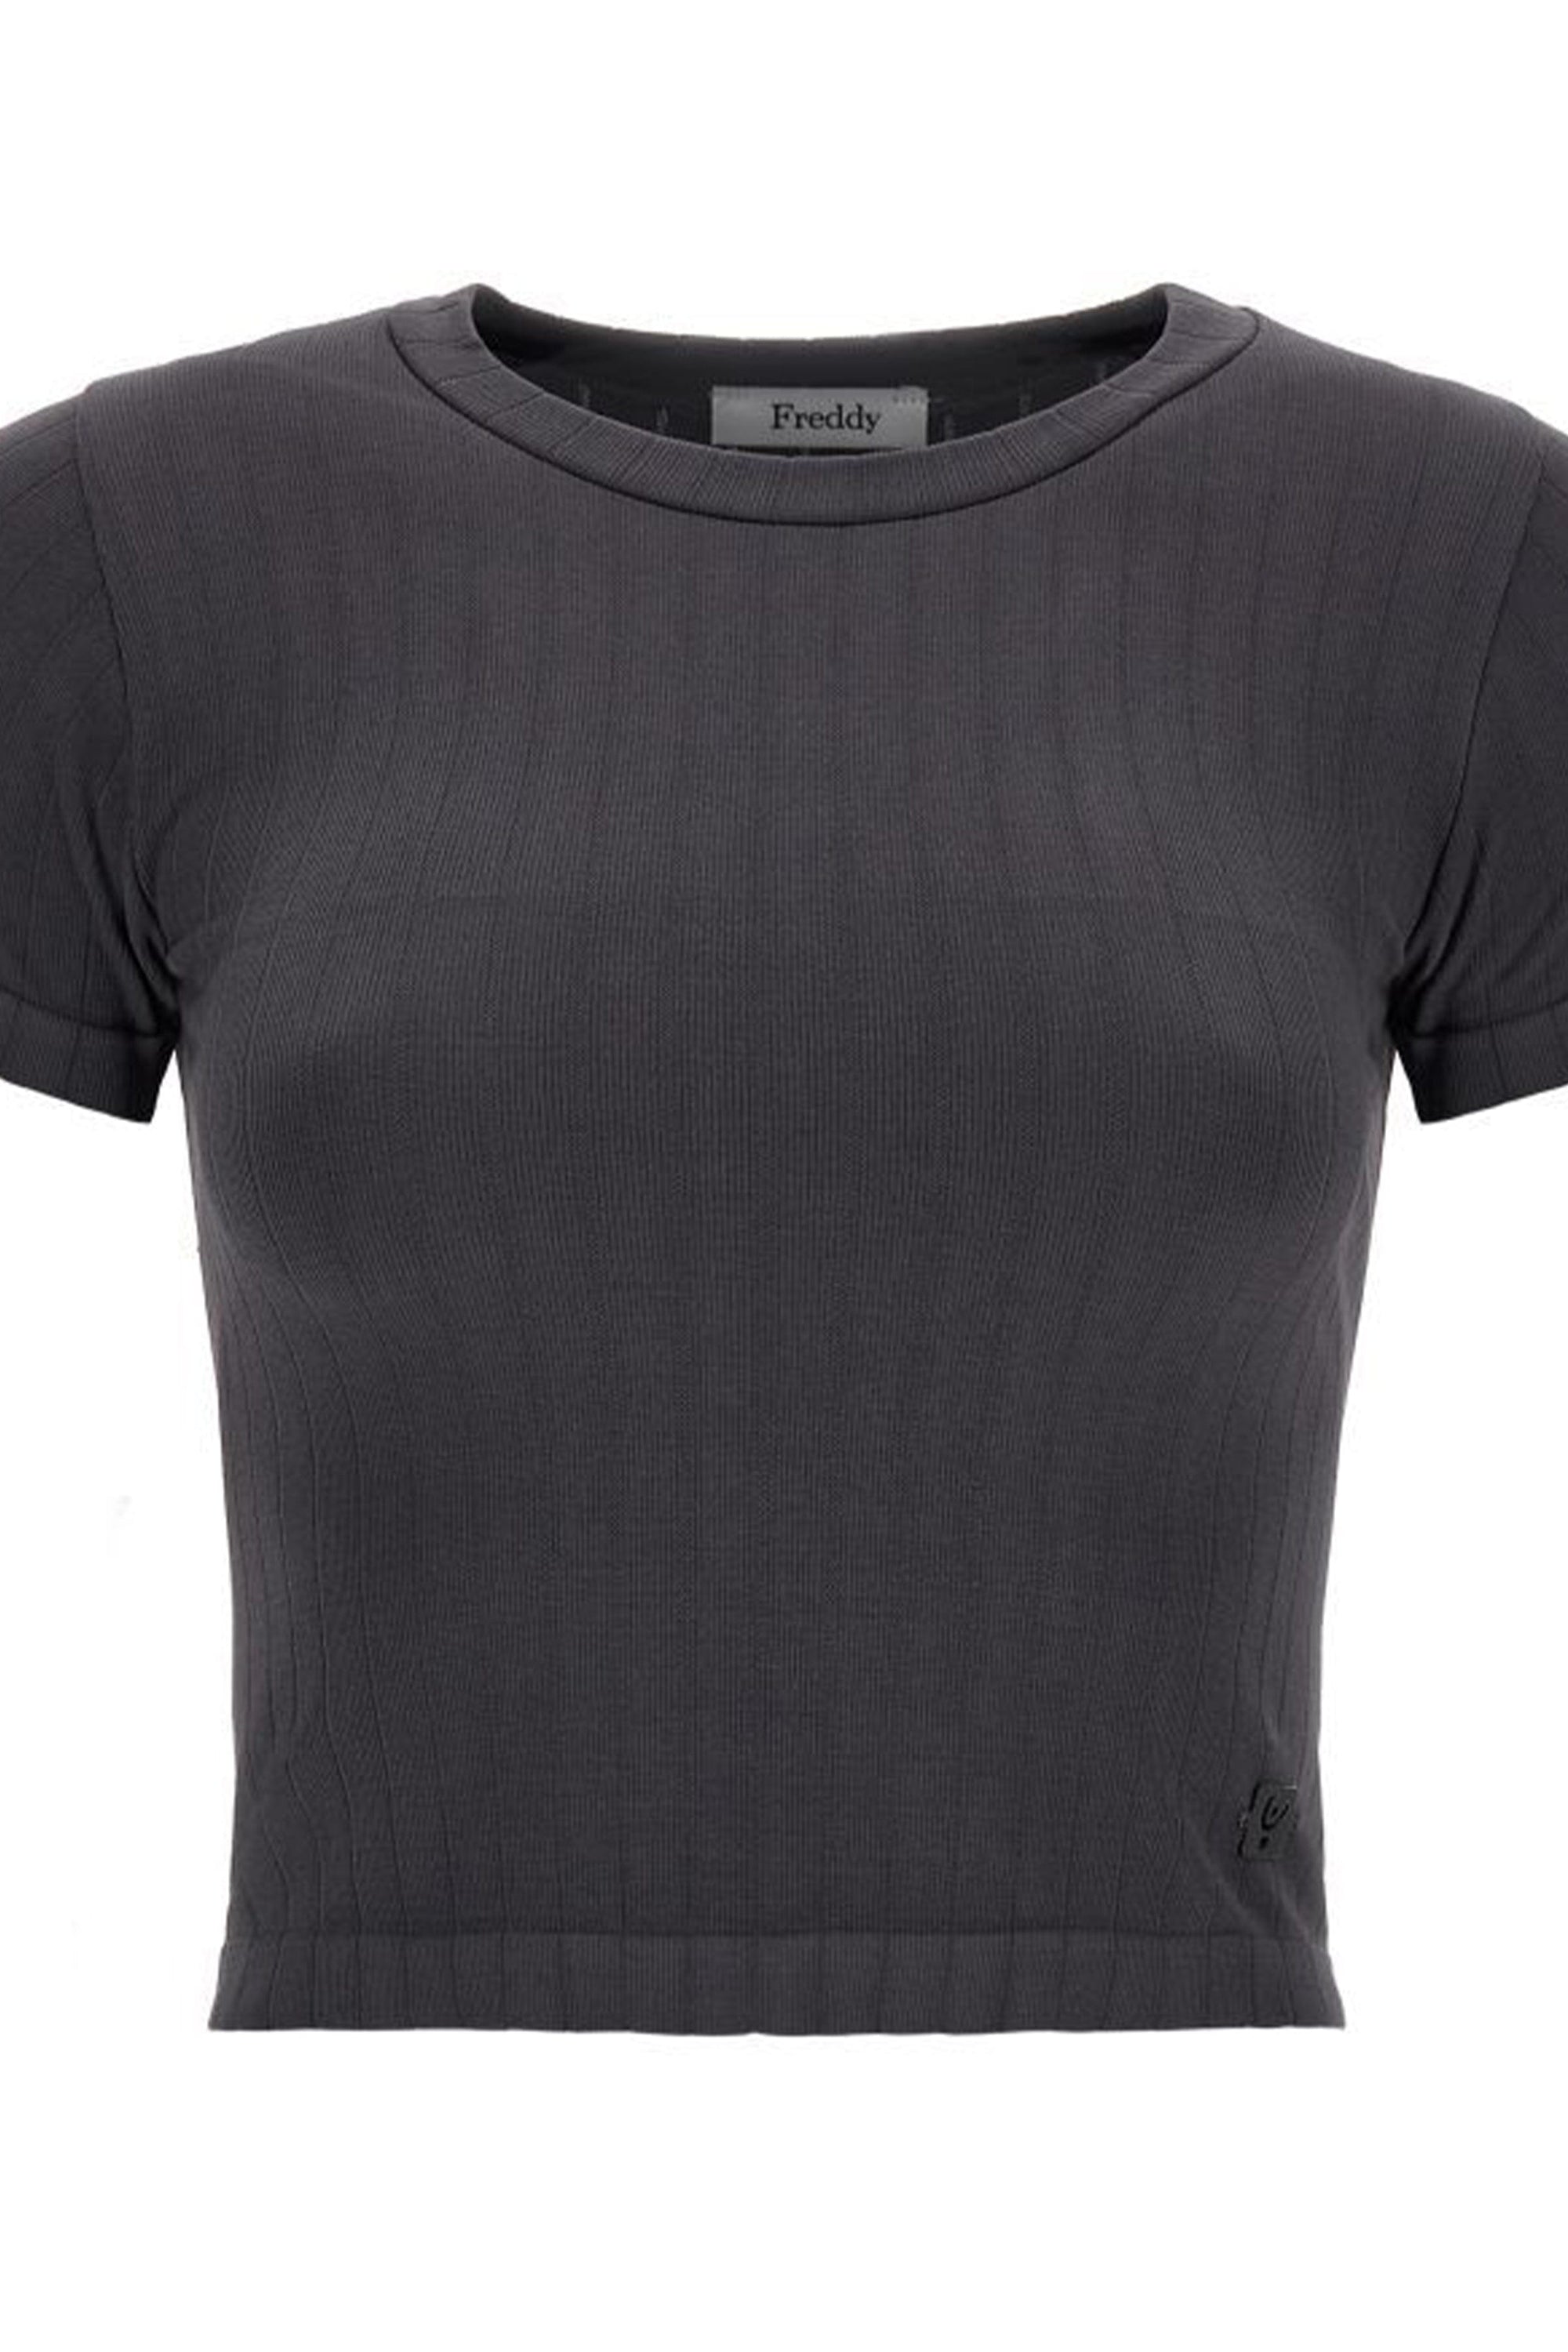 Ribbed T Shirt - Charcoal 2